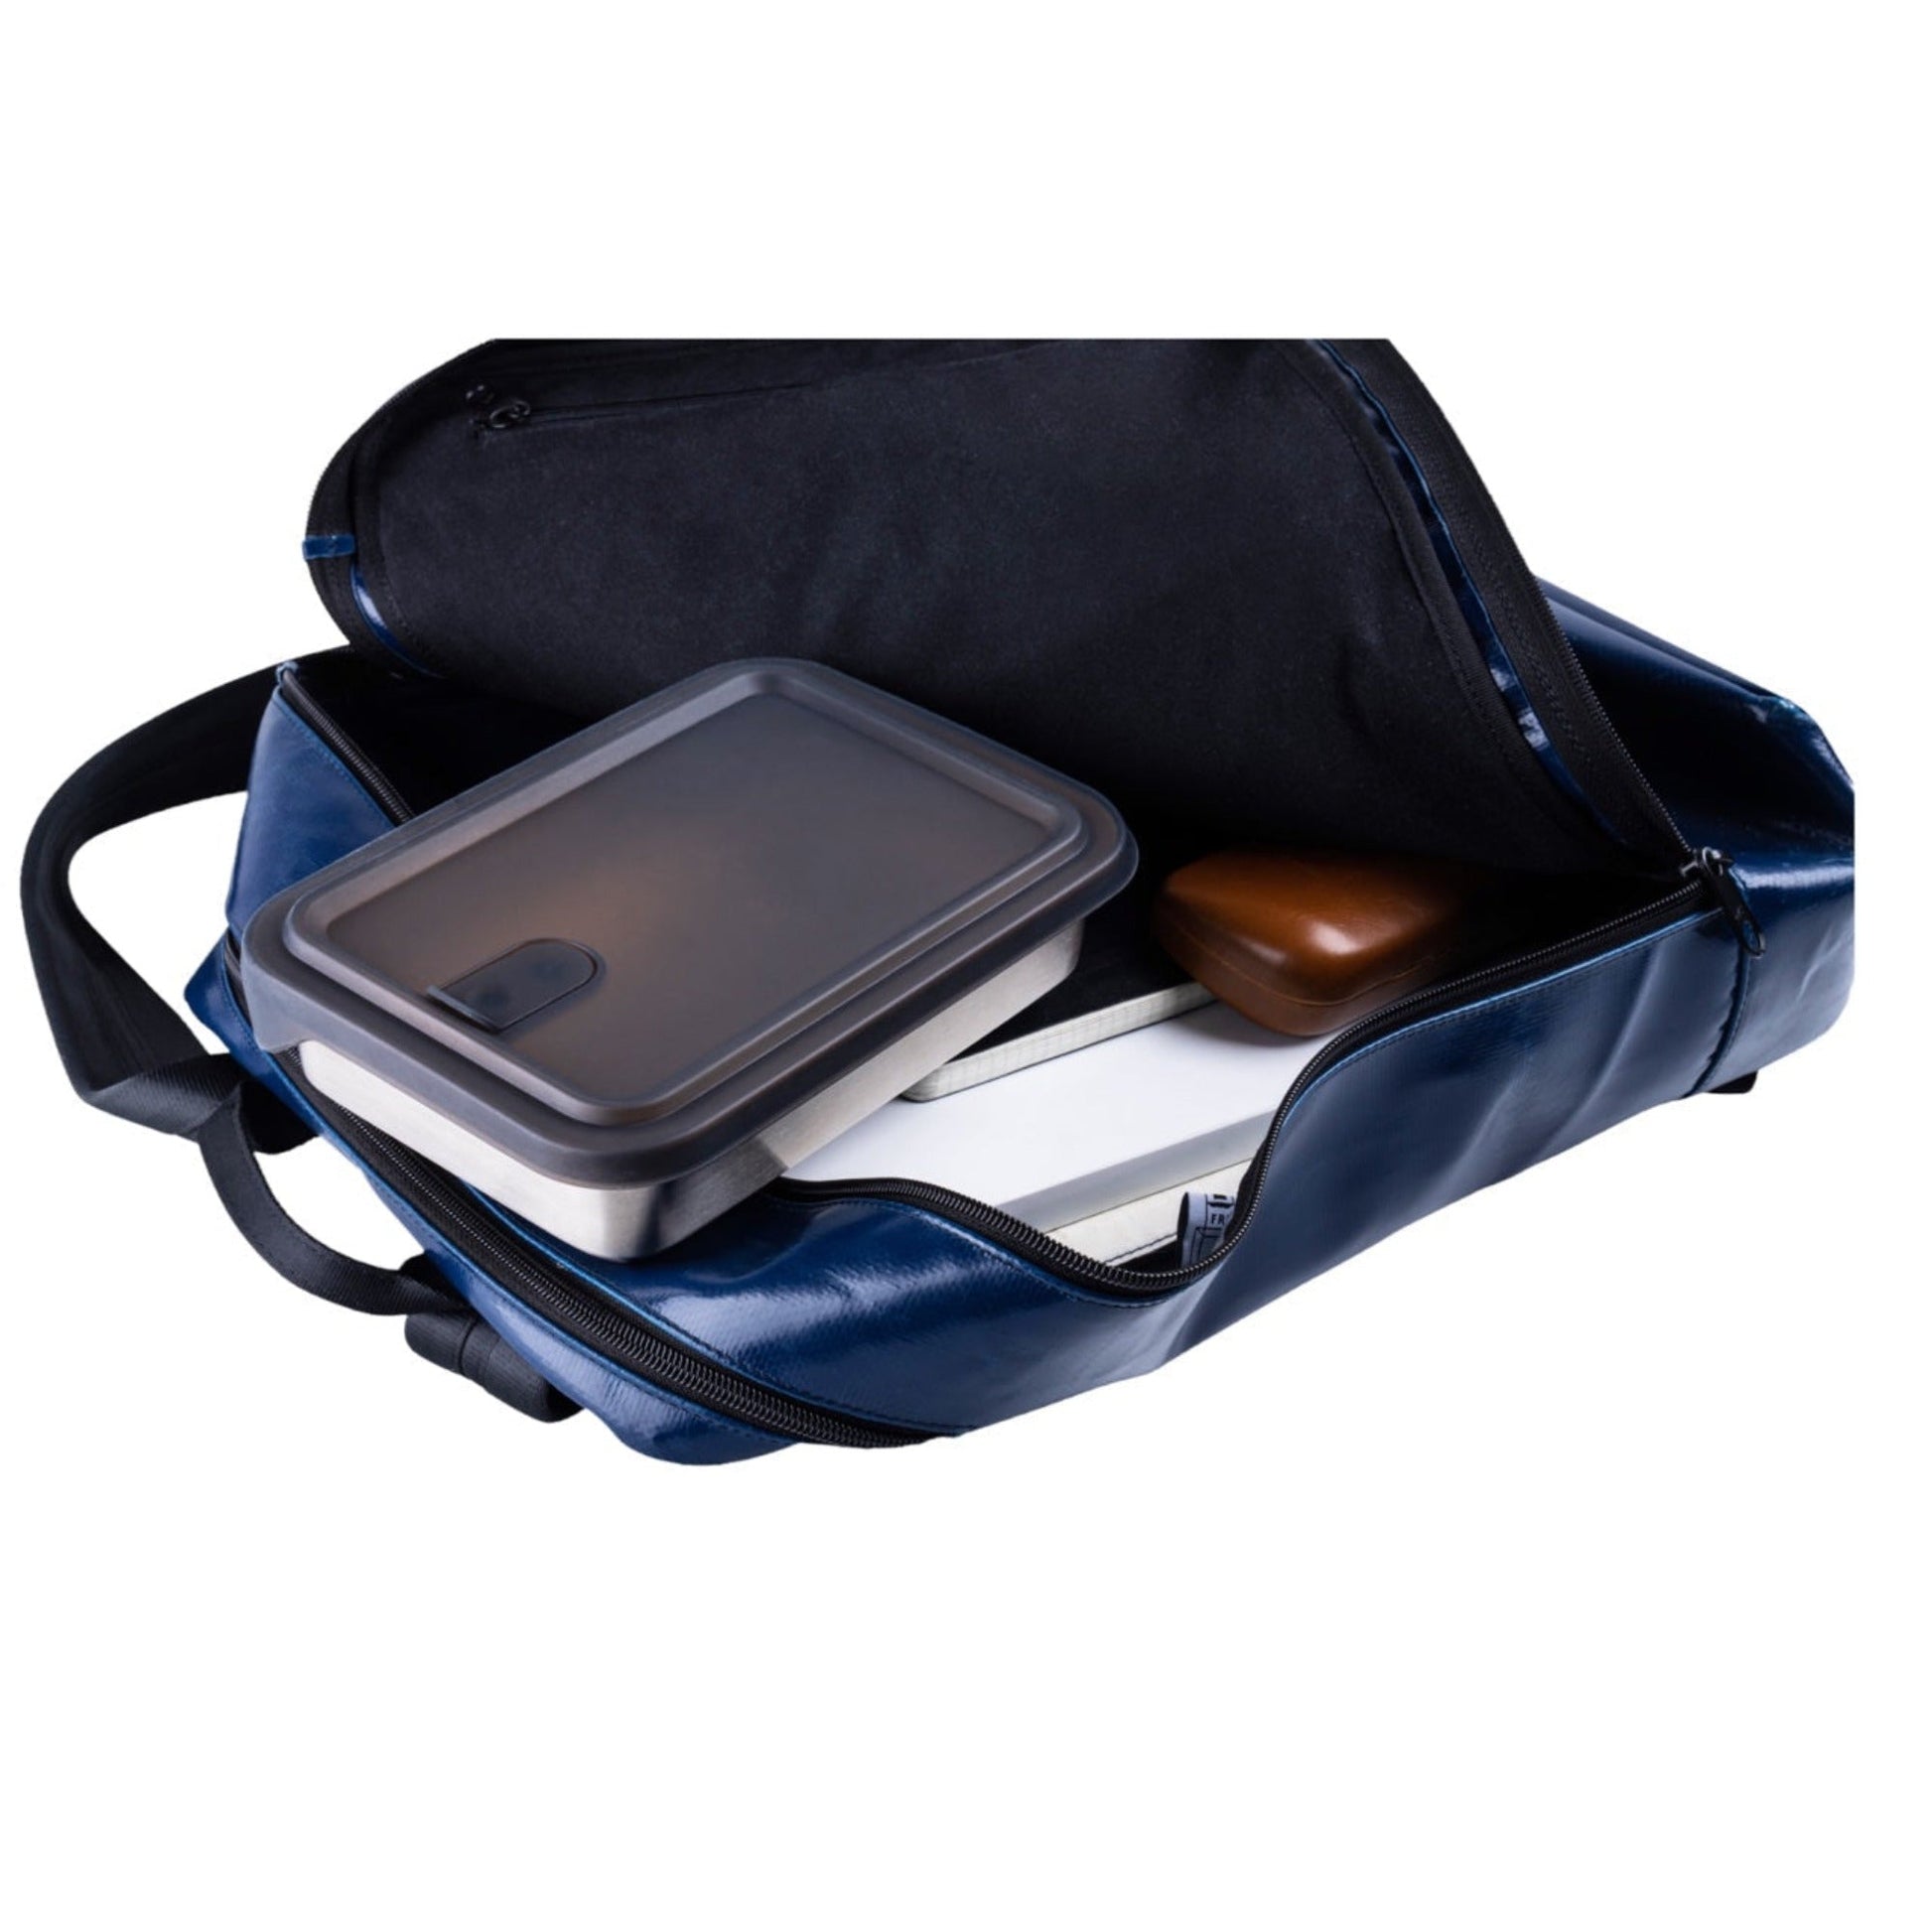 Edelstahl Lunchbox filip® 4er Set mit Sleeve und Besteckfach - #shop_name